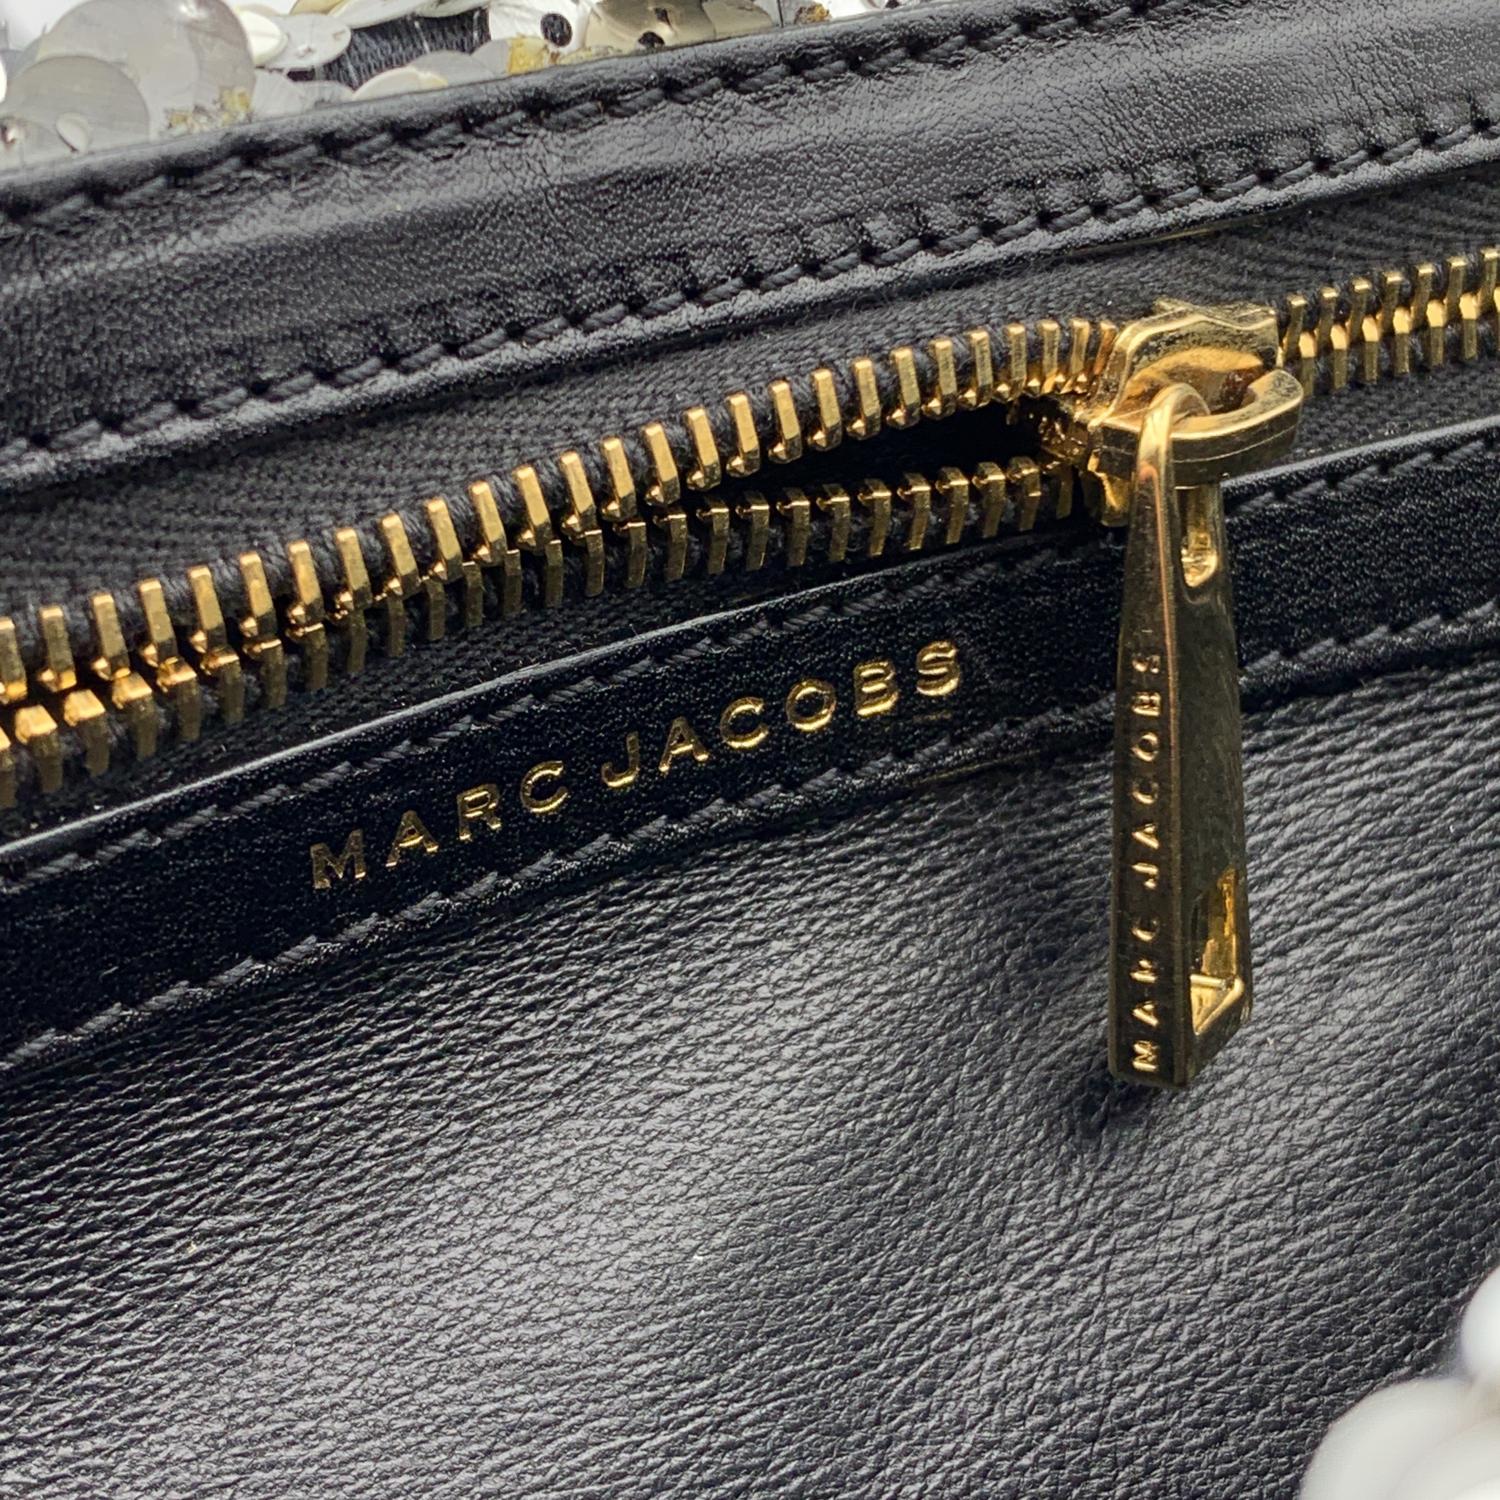  Marc Jacobs - Grand sac à main à rabat doré à sequins argentés et dorés Pour femmes 